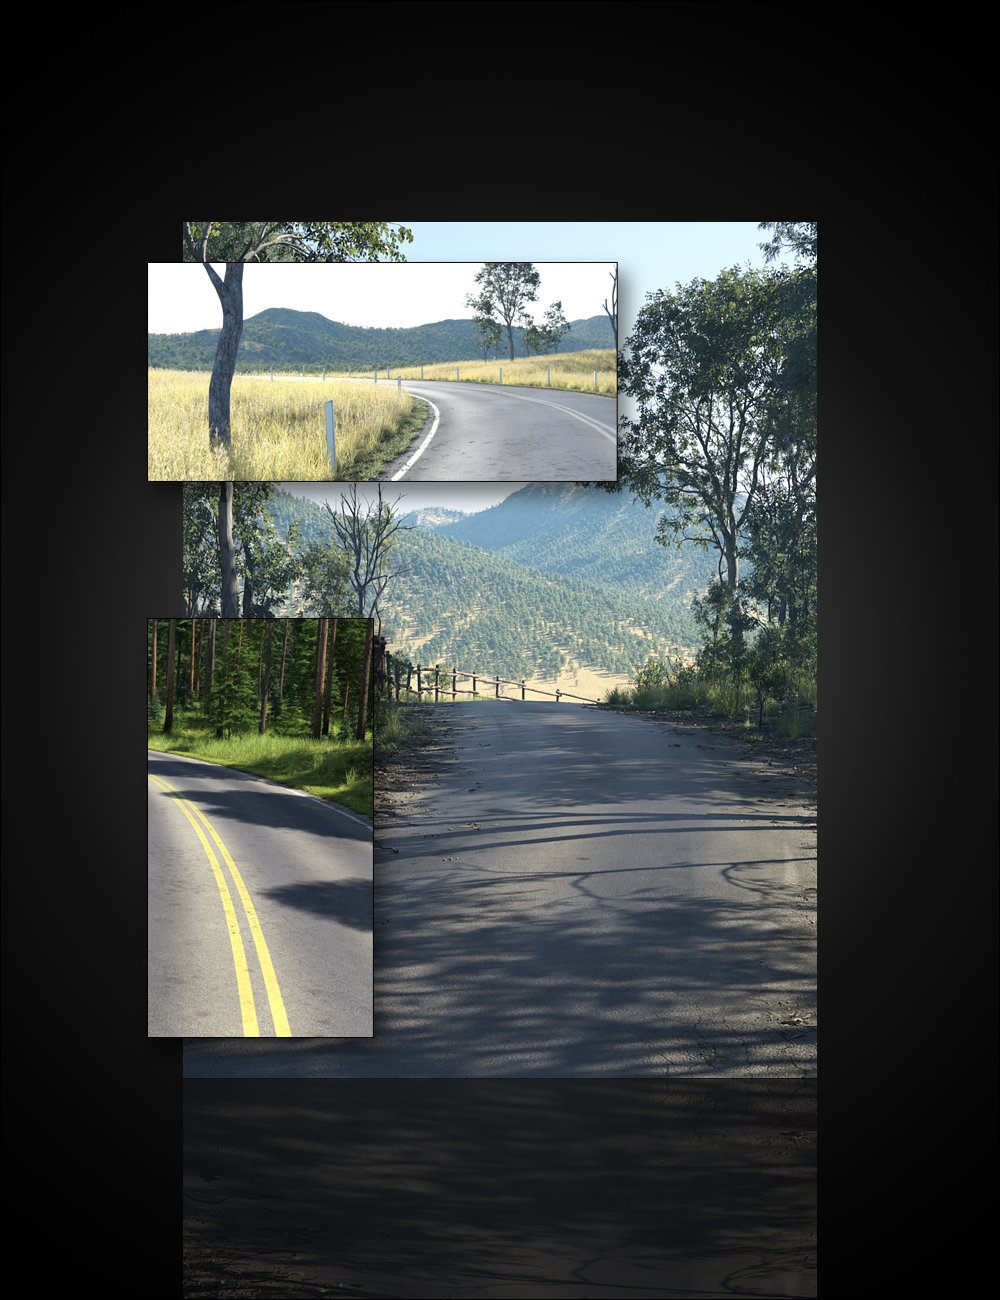 UltraScenery - Landscape Features Volume 4 by: HowieFarkes, 3D Models by Daz 3D